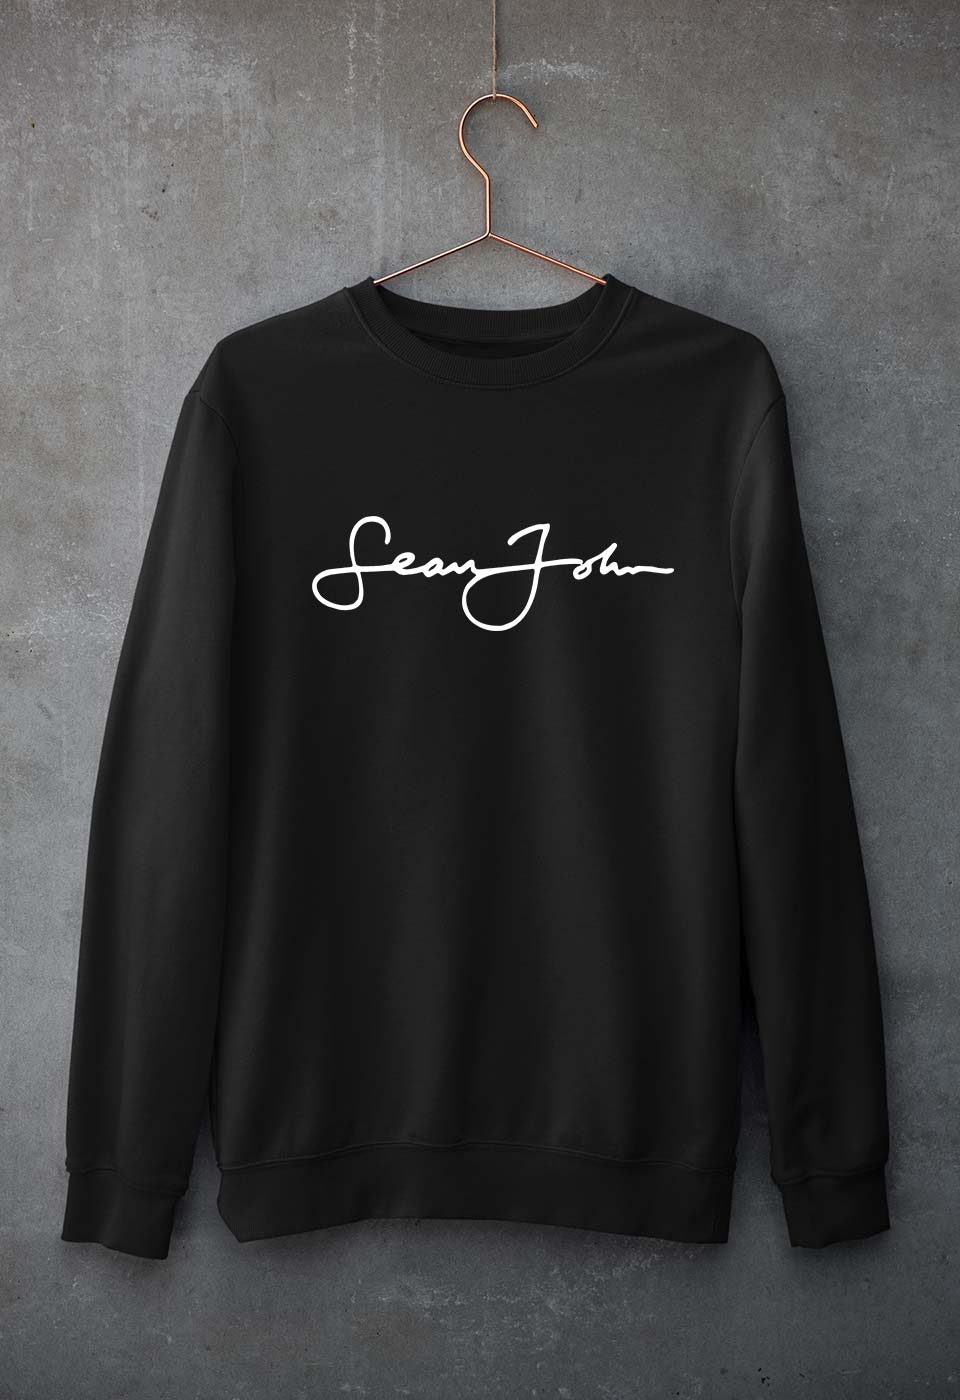 Sean John Unisex Sweatshirt for Men/Women-S(40 Inches)-Black-Ektarfa.online